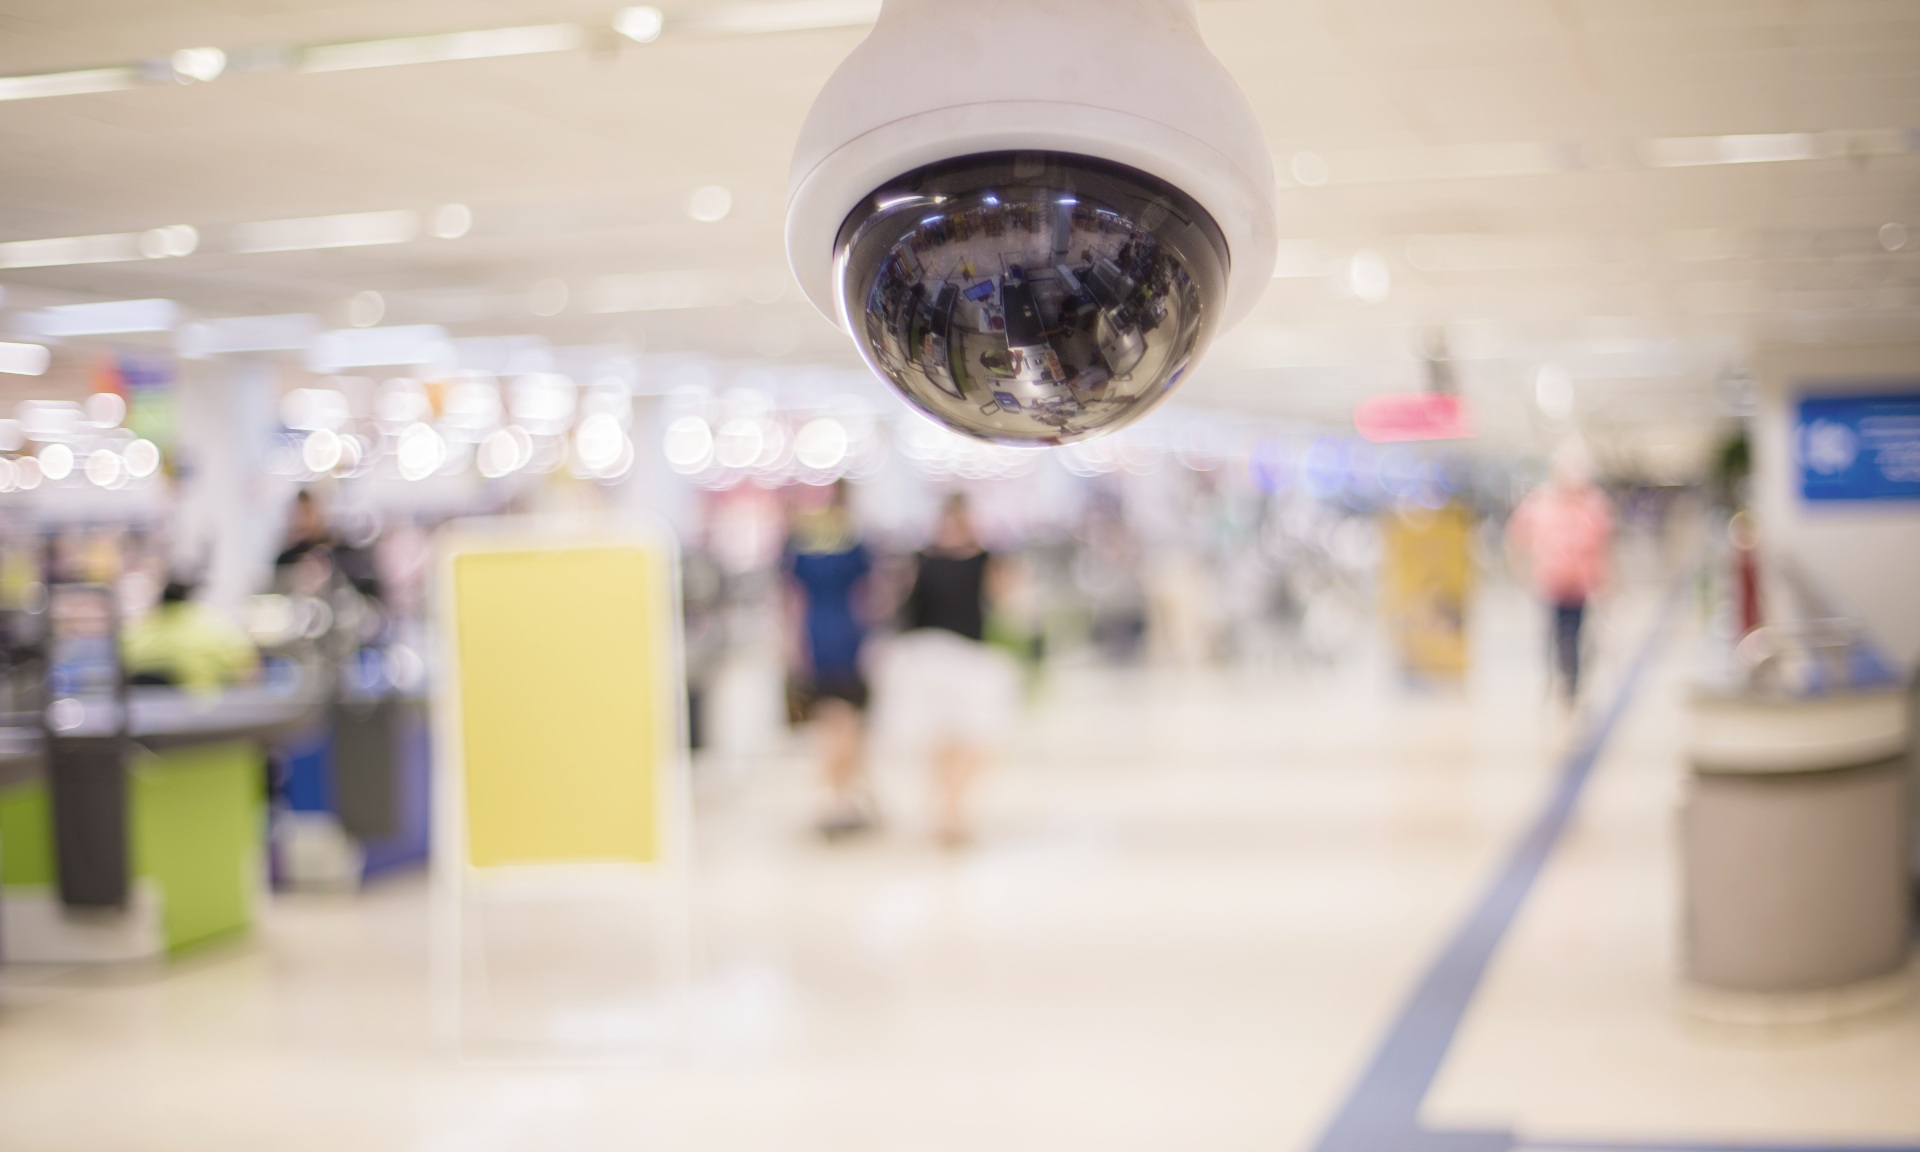 Video surveillance in retail